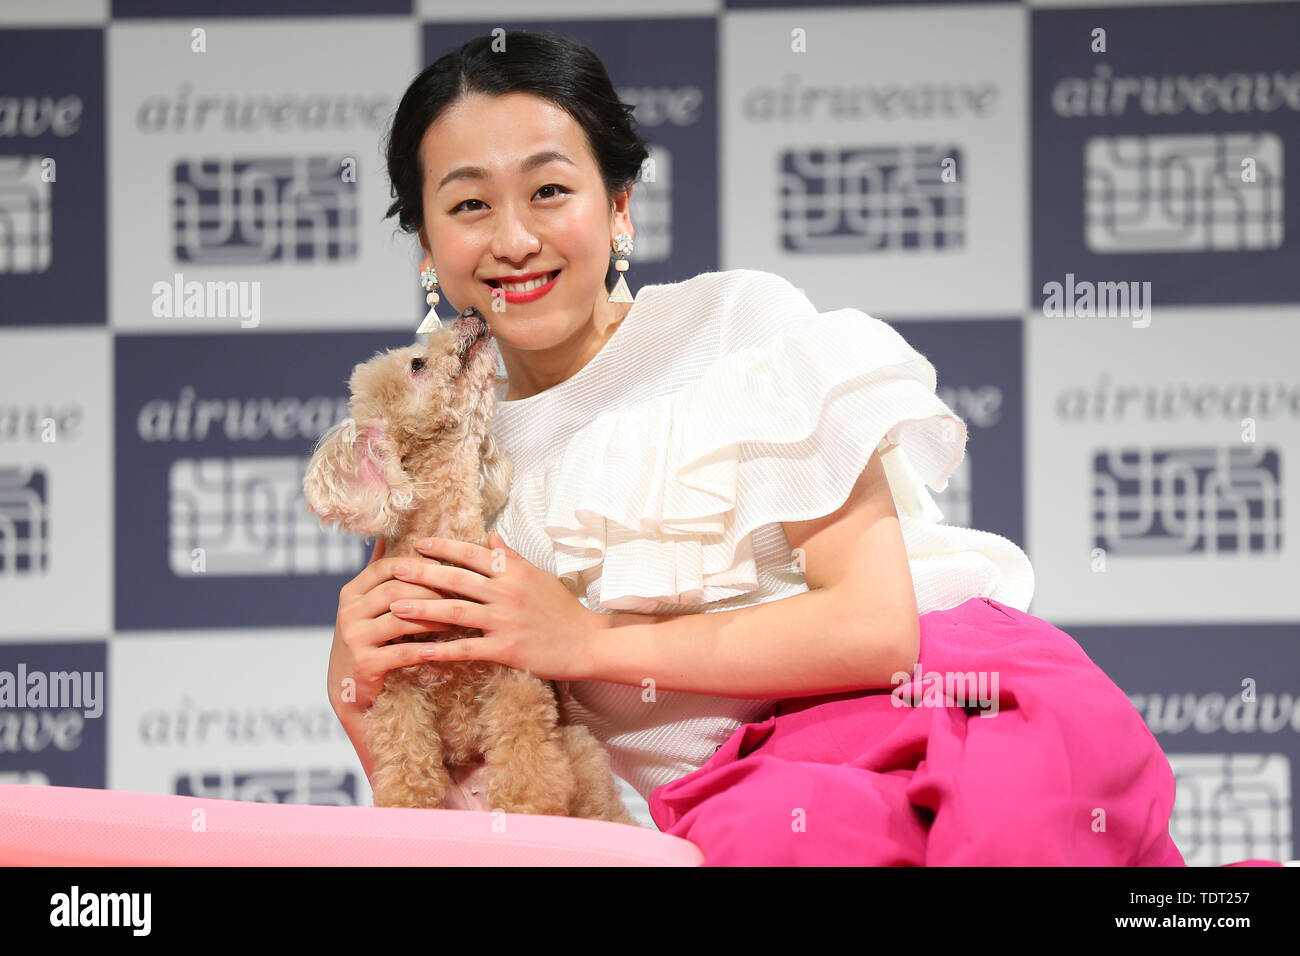 La patineuse artistique professionnel du Japon Mao Asada, assiste à un événement promotionnel pour matelas japonais bouilloire Airweave avec son chien Aero à Tokyo, Japon le 18 juin 2019. Credit : Pasya/AFLO/Alamy Live News Banque D'Images